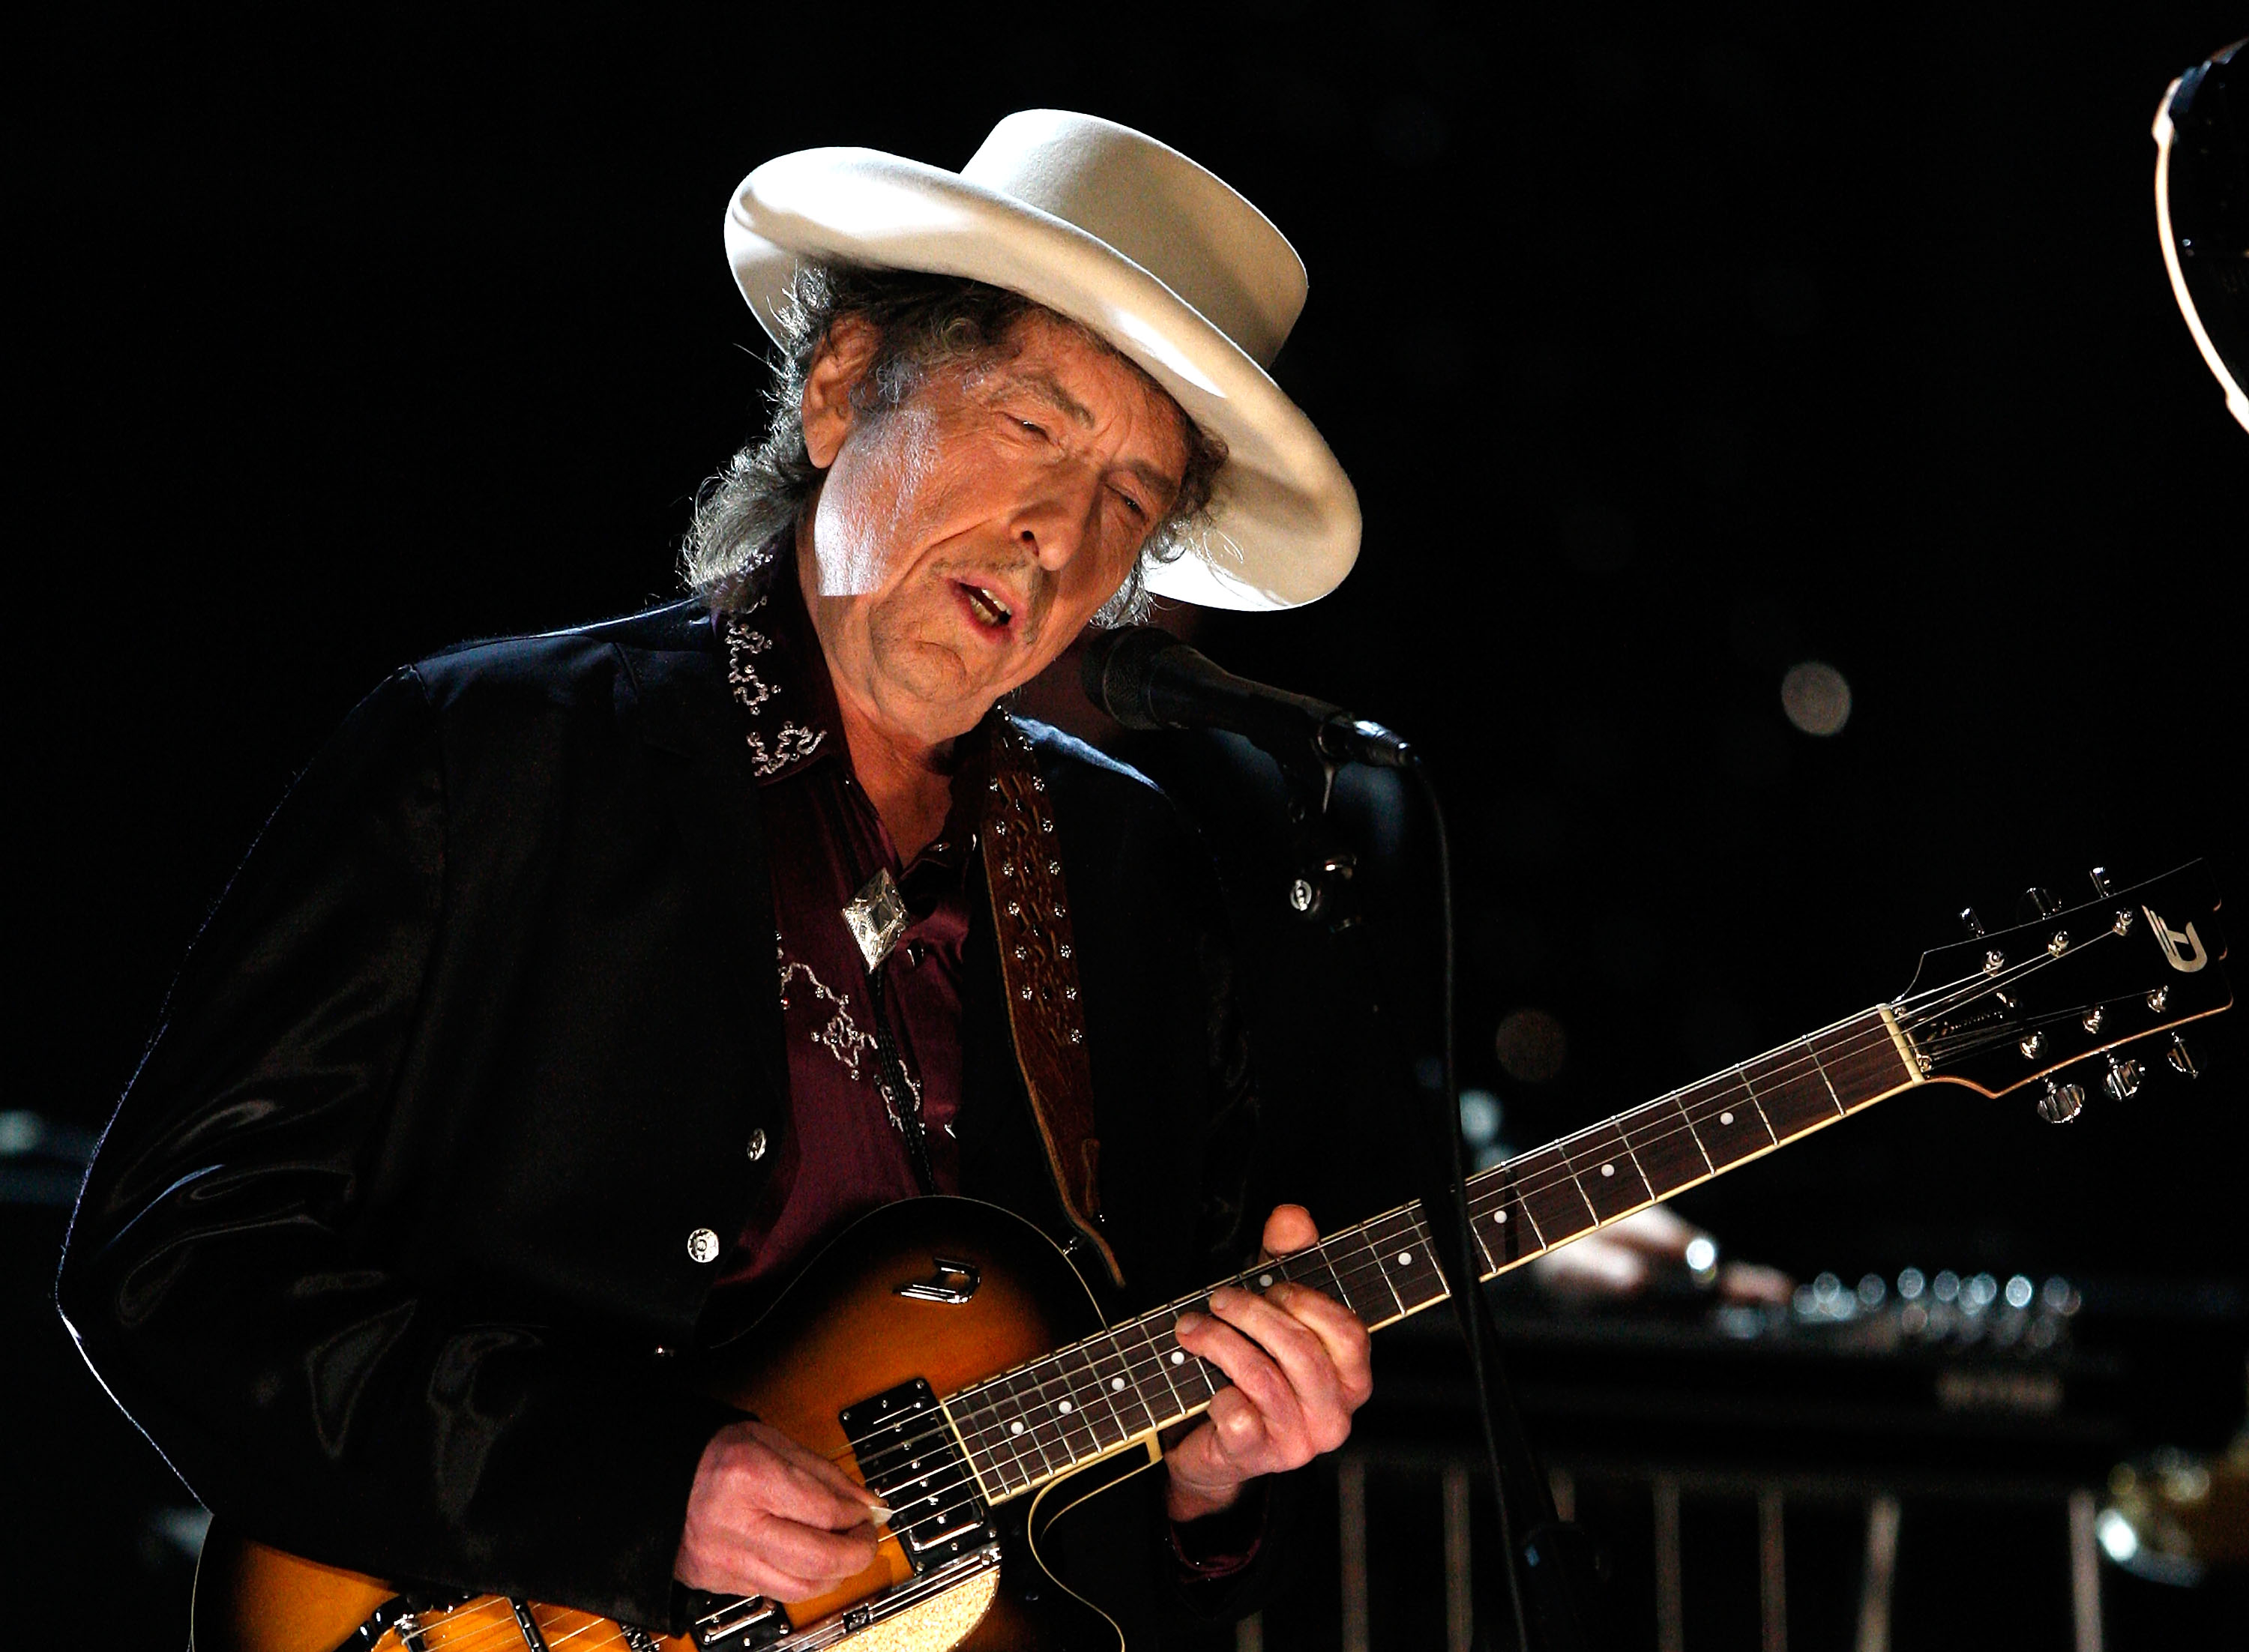 "Greatest living poet" Bob Dylan wins nobel literature prize